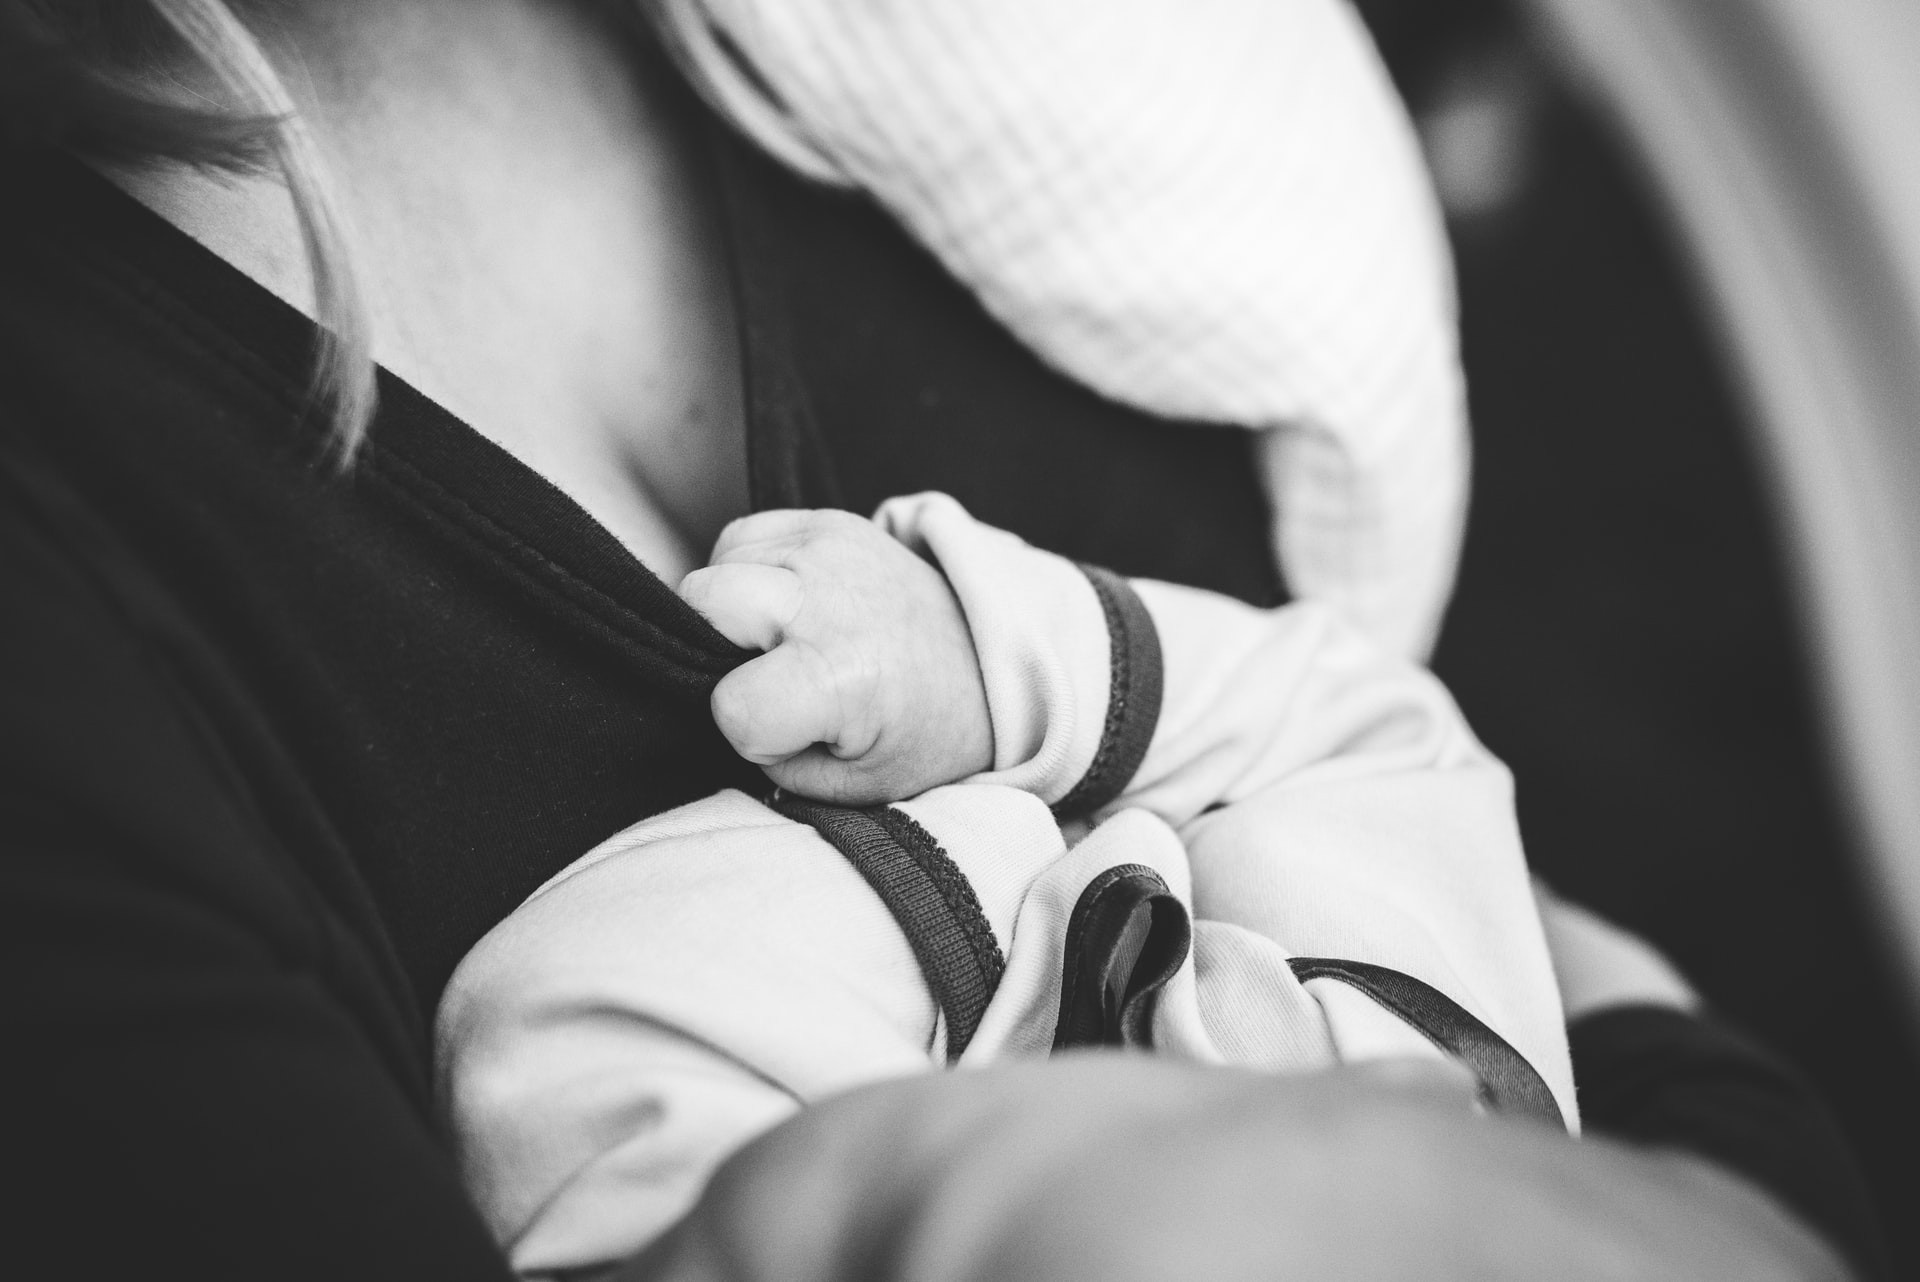 Amamentação tem benefícios para saúde da mãe e do bebê comprovados pela ciência (Foto: Jordan Whitt/Unsplash)